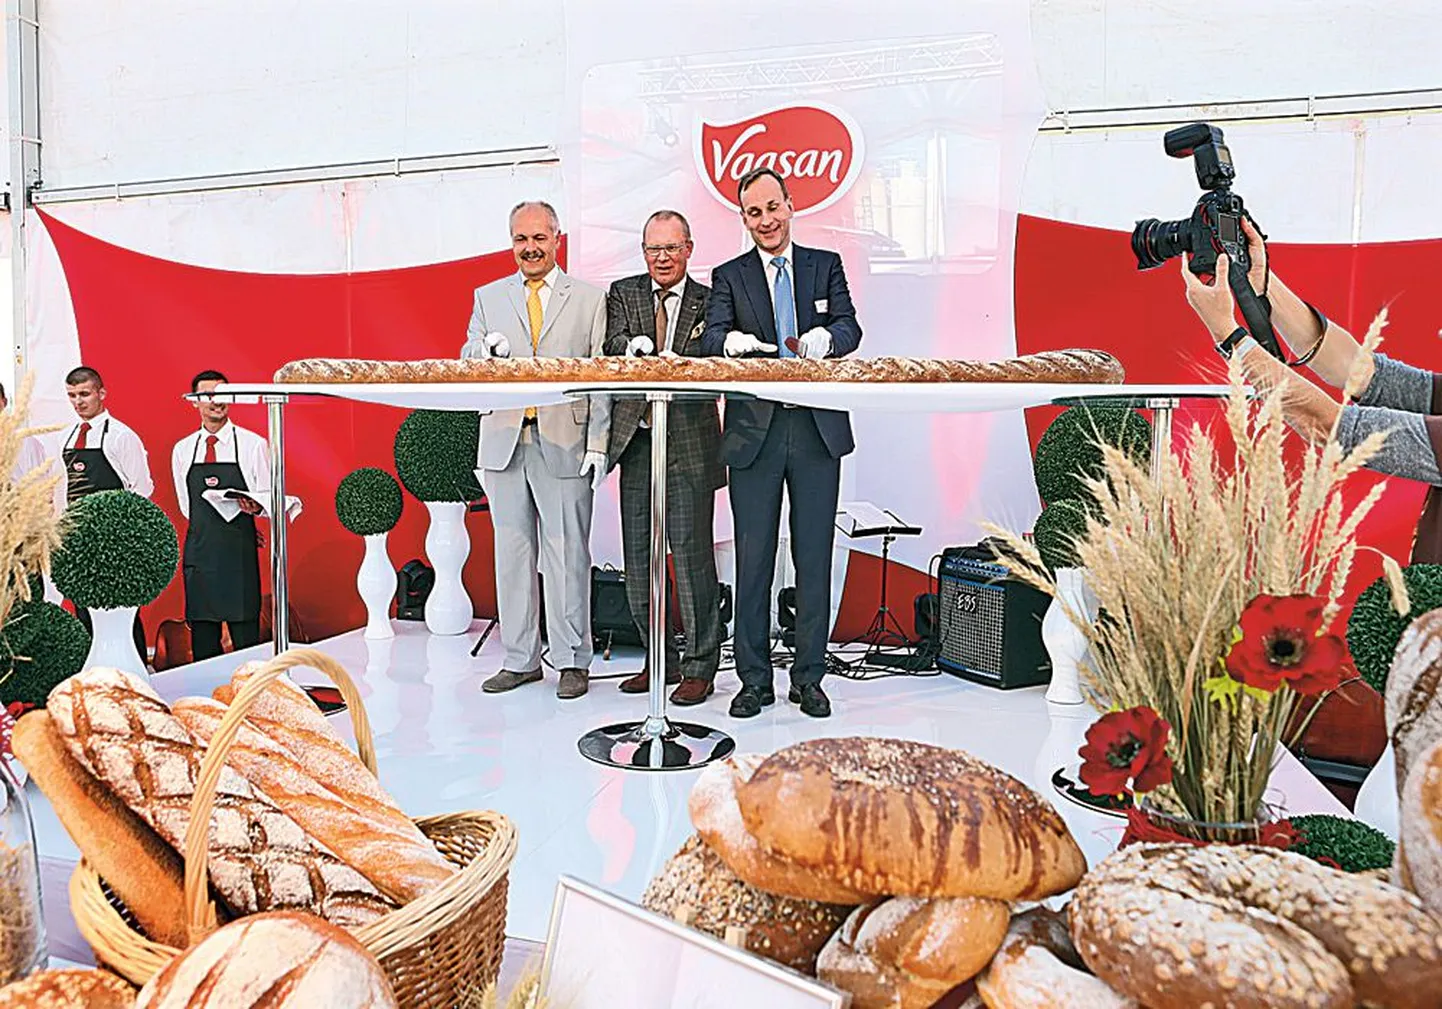 Vaasan Groupi uue tehase avamisel lõikasid selleks puhuks küpsetatud 15 kilogrammi kaaluva leiva läbi Saue linnapea Henn Põlluaas (vasakult), tehase ehitanud SRV juht Jukka Hienonen ja kontserni tegevjuht Esa Rautalinko.